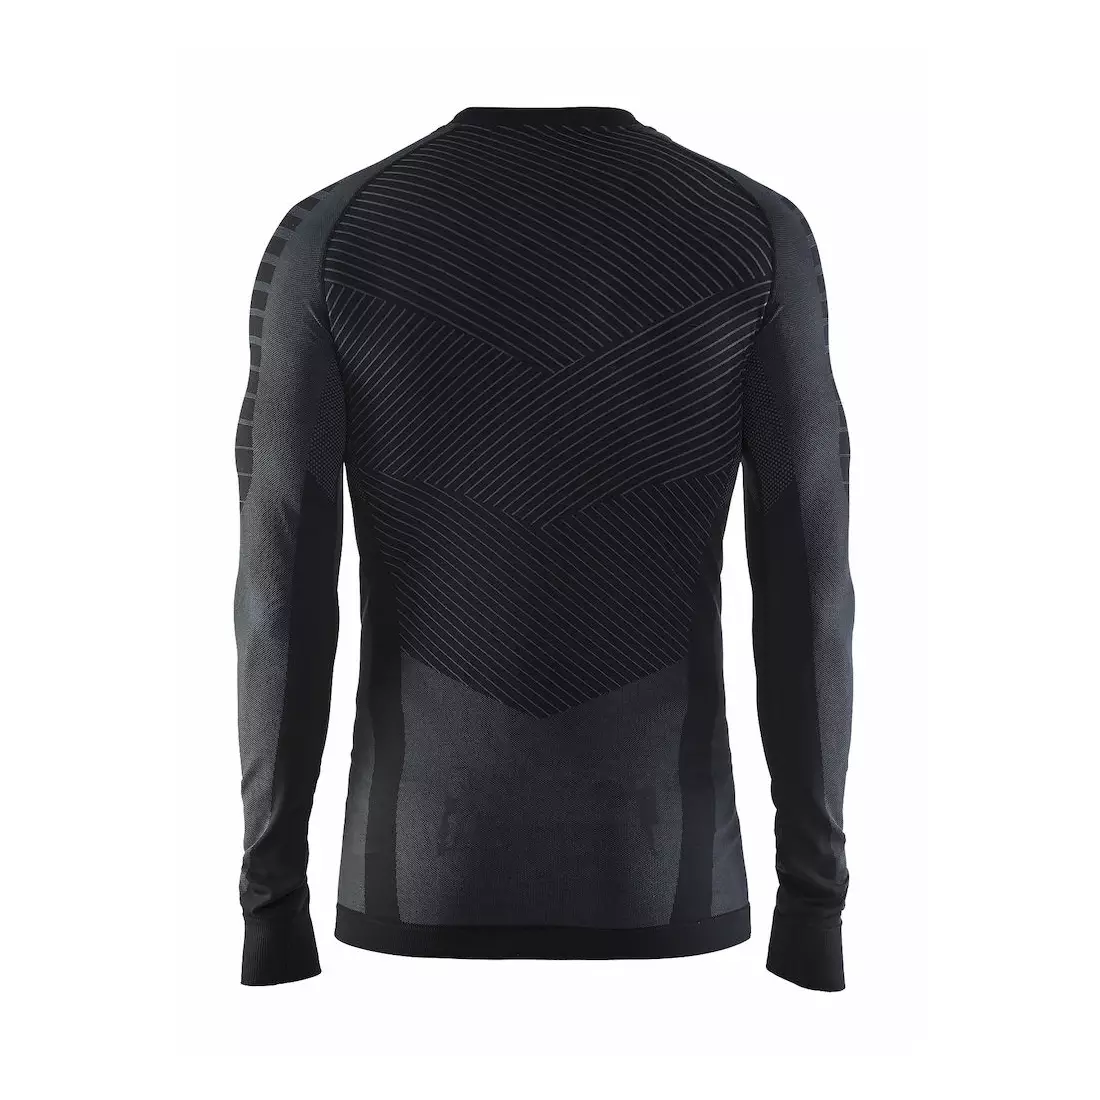 CRAFT ACTIVE INTENSITY - pánské tričko, termoprádlo s dlouhým rukávem 1905337-999985